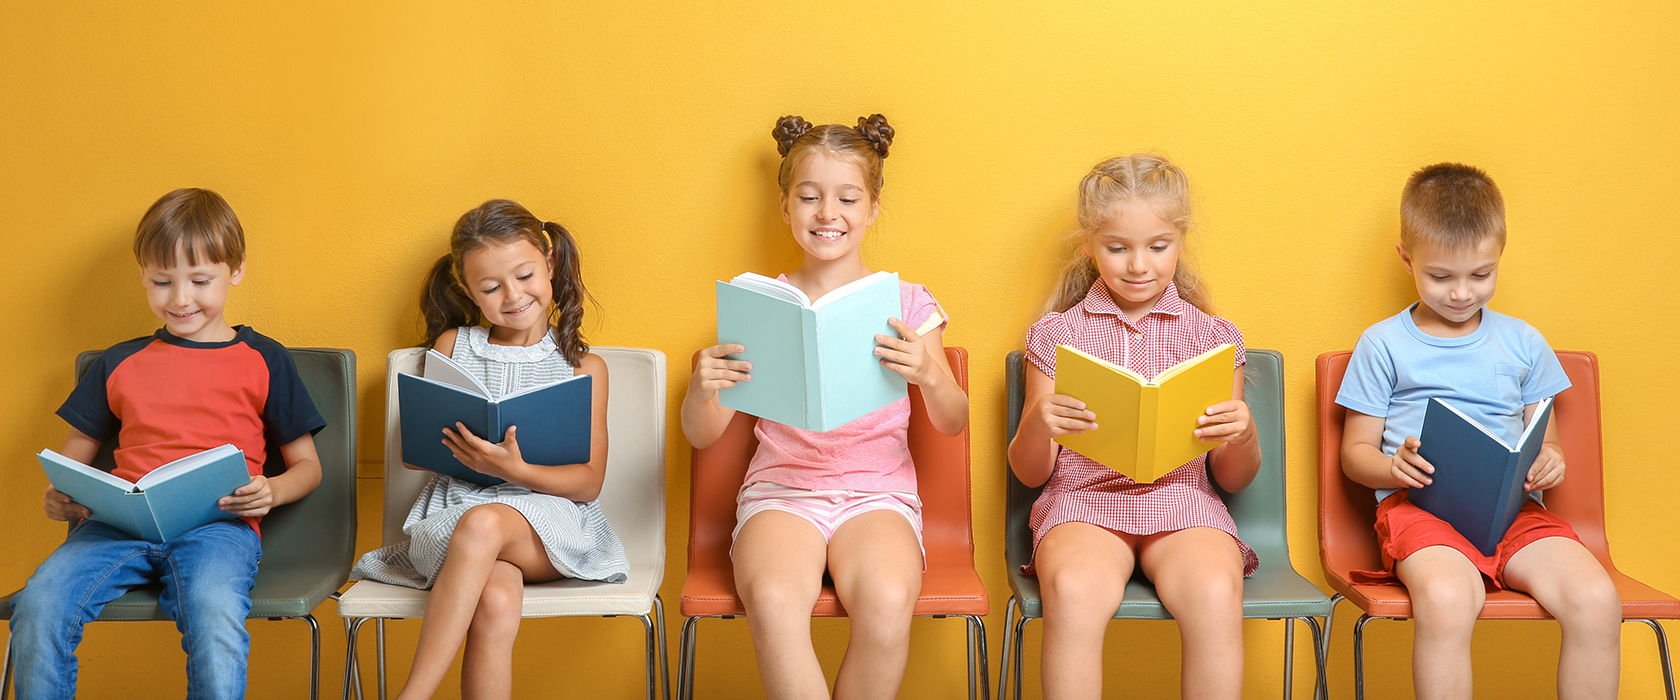 Как чтение книг влияют на развитие ребенка thumbnail